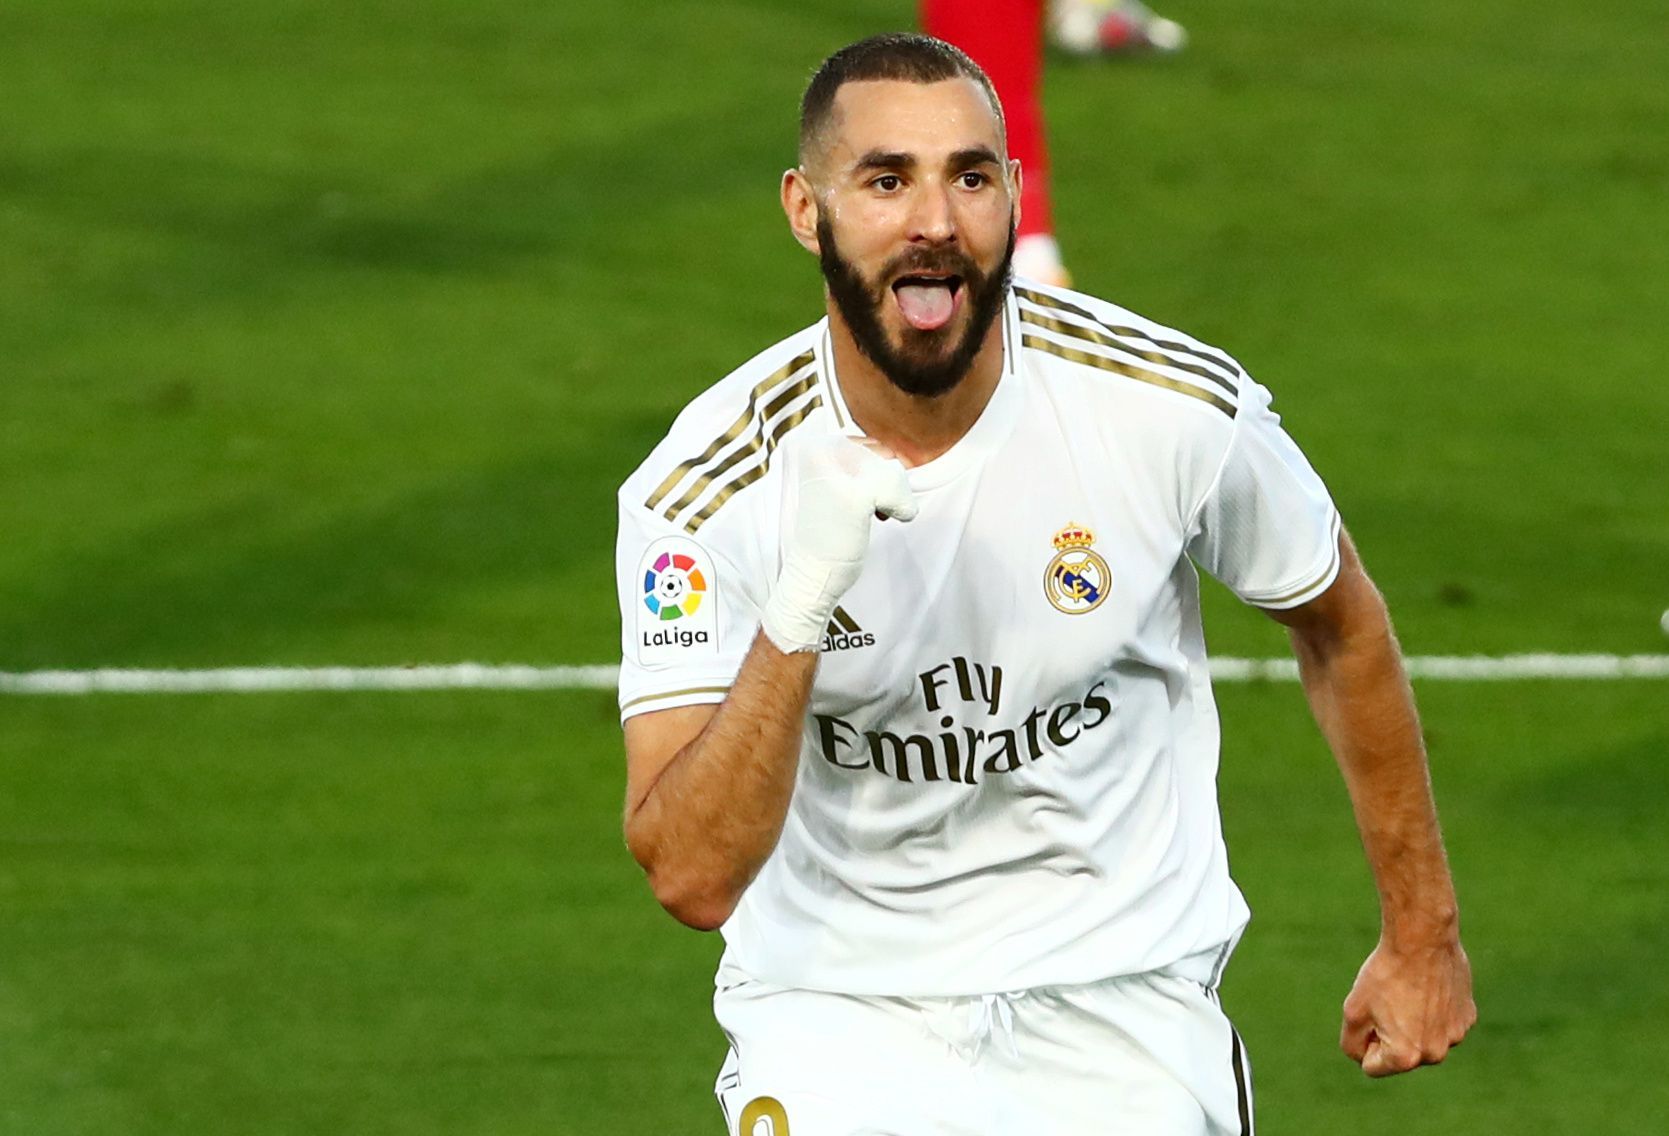 Real Madrid slaví zisk 34. titulu ve španělské lize, Karim Benzema